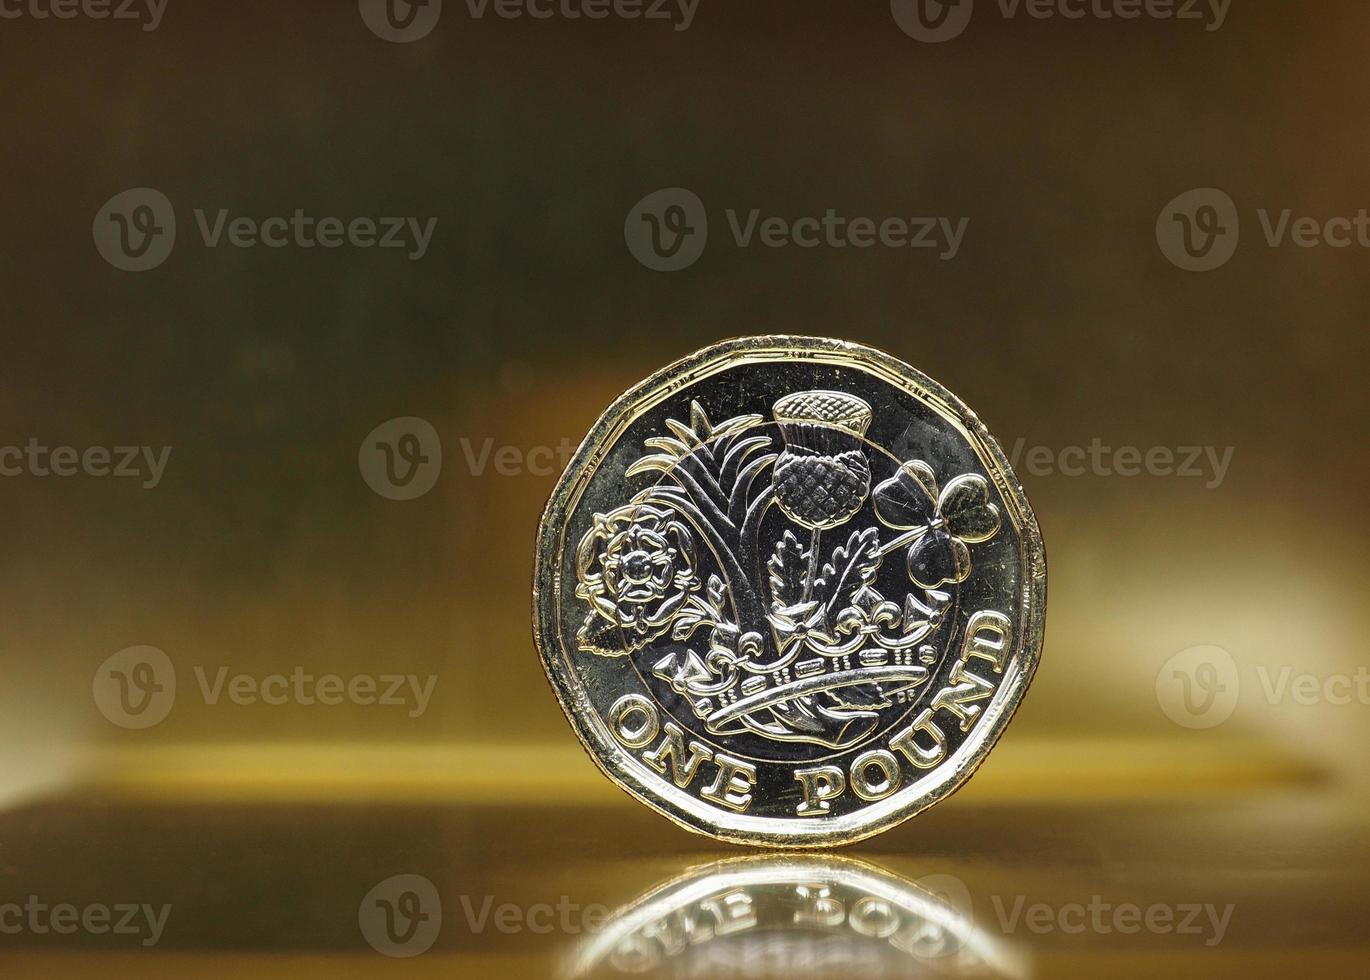 1 pund mynt, Storbritannien över guld foto